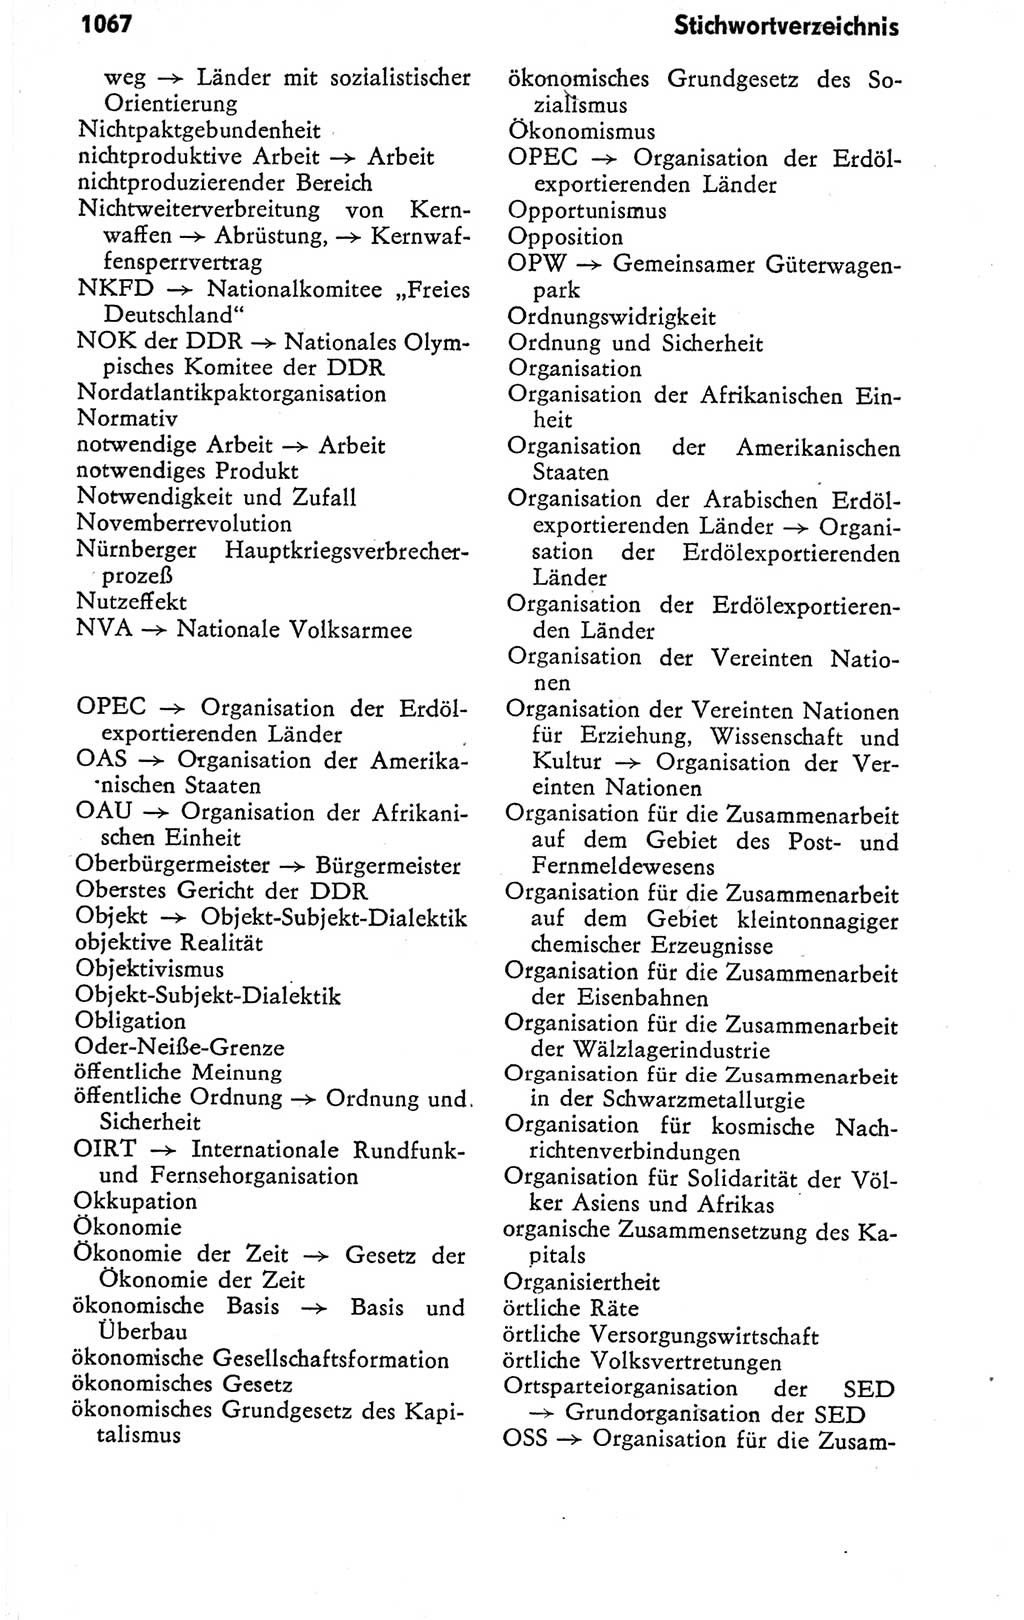 Kleines politisches Wörterbuch [Deutsche Demokratische Republik (DDR)] 1978, Seite 1067 (Kl. pol. Wb. DDR 1978, S. 1067)